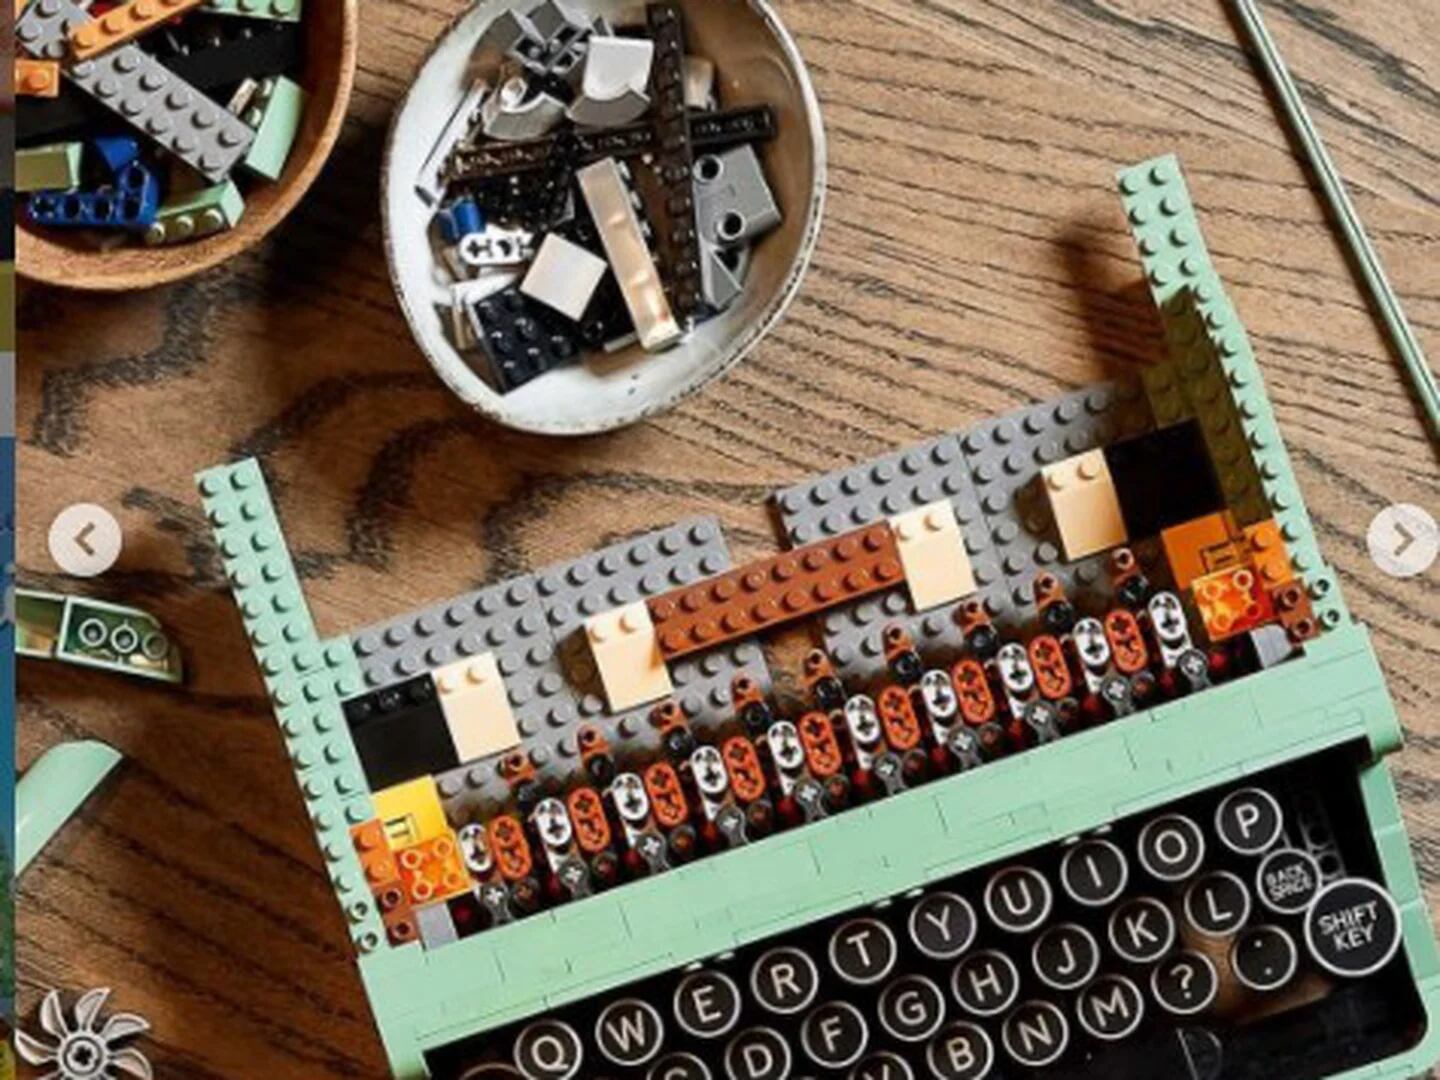 Lego pone a la venta una máquina de escribir real con más de 2.000 piezas